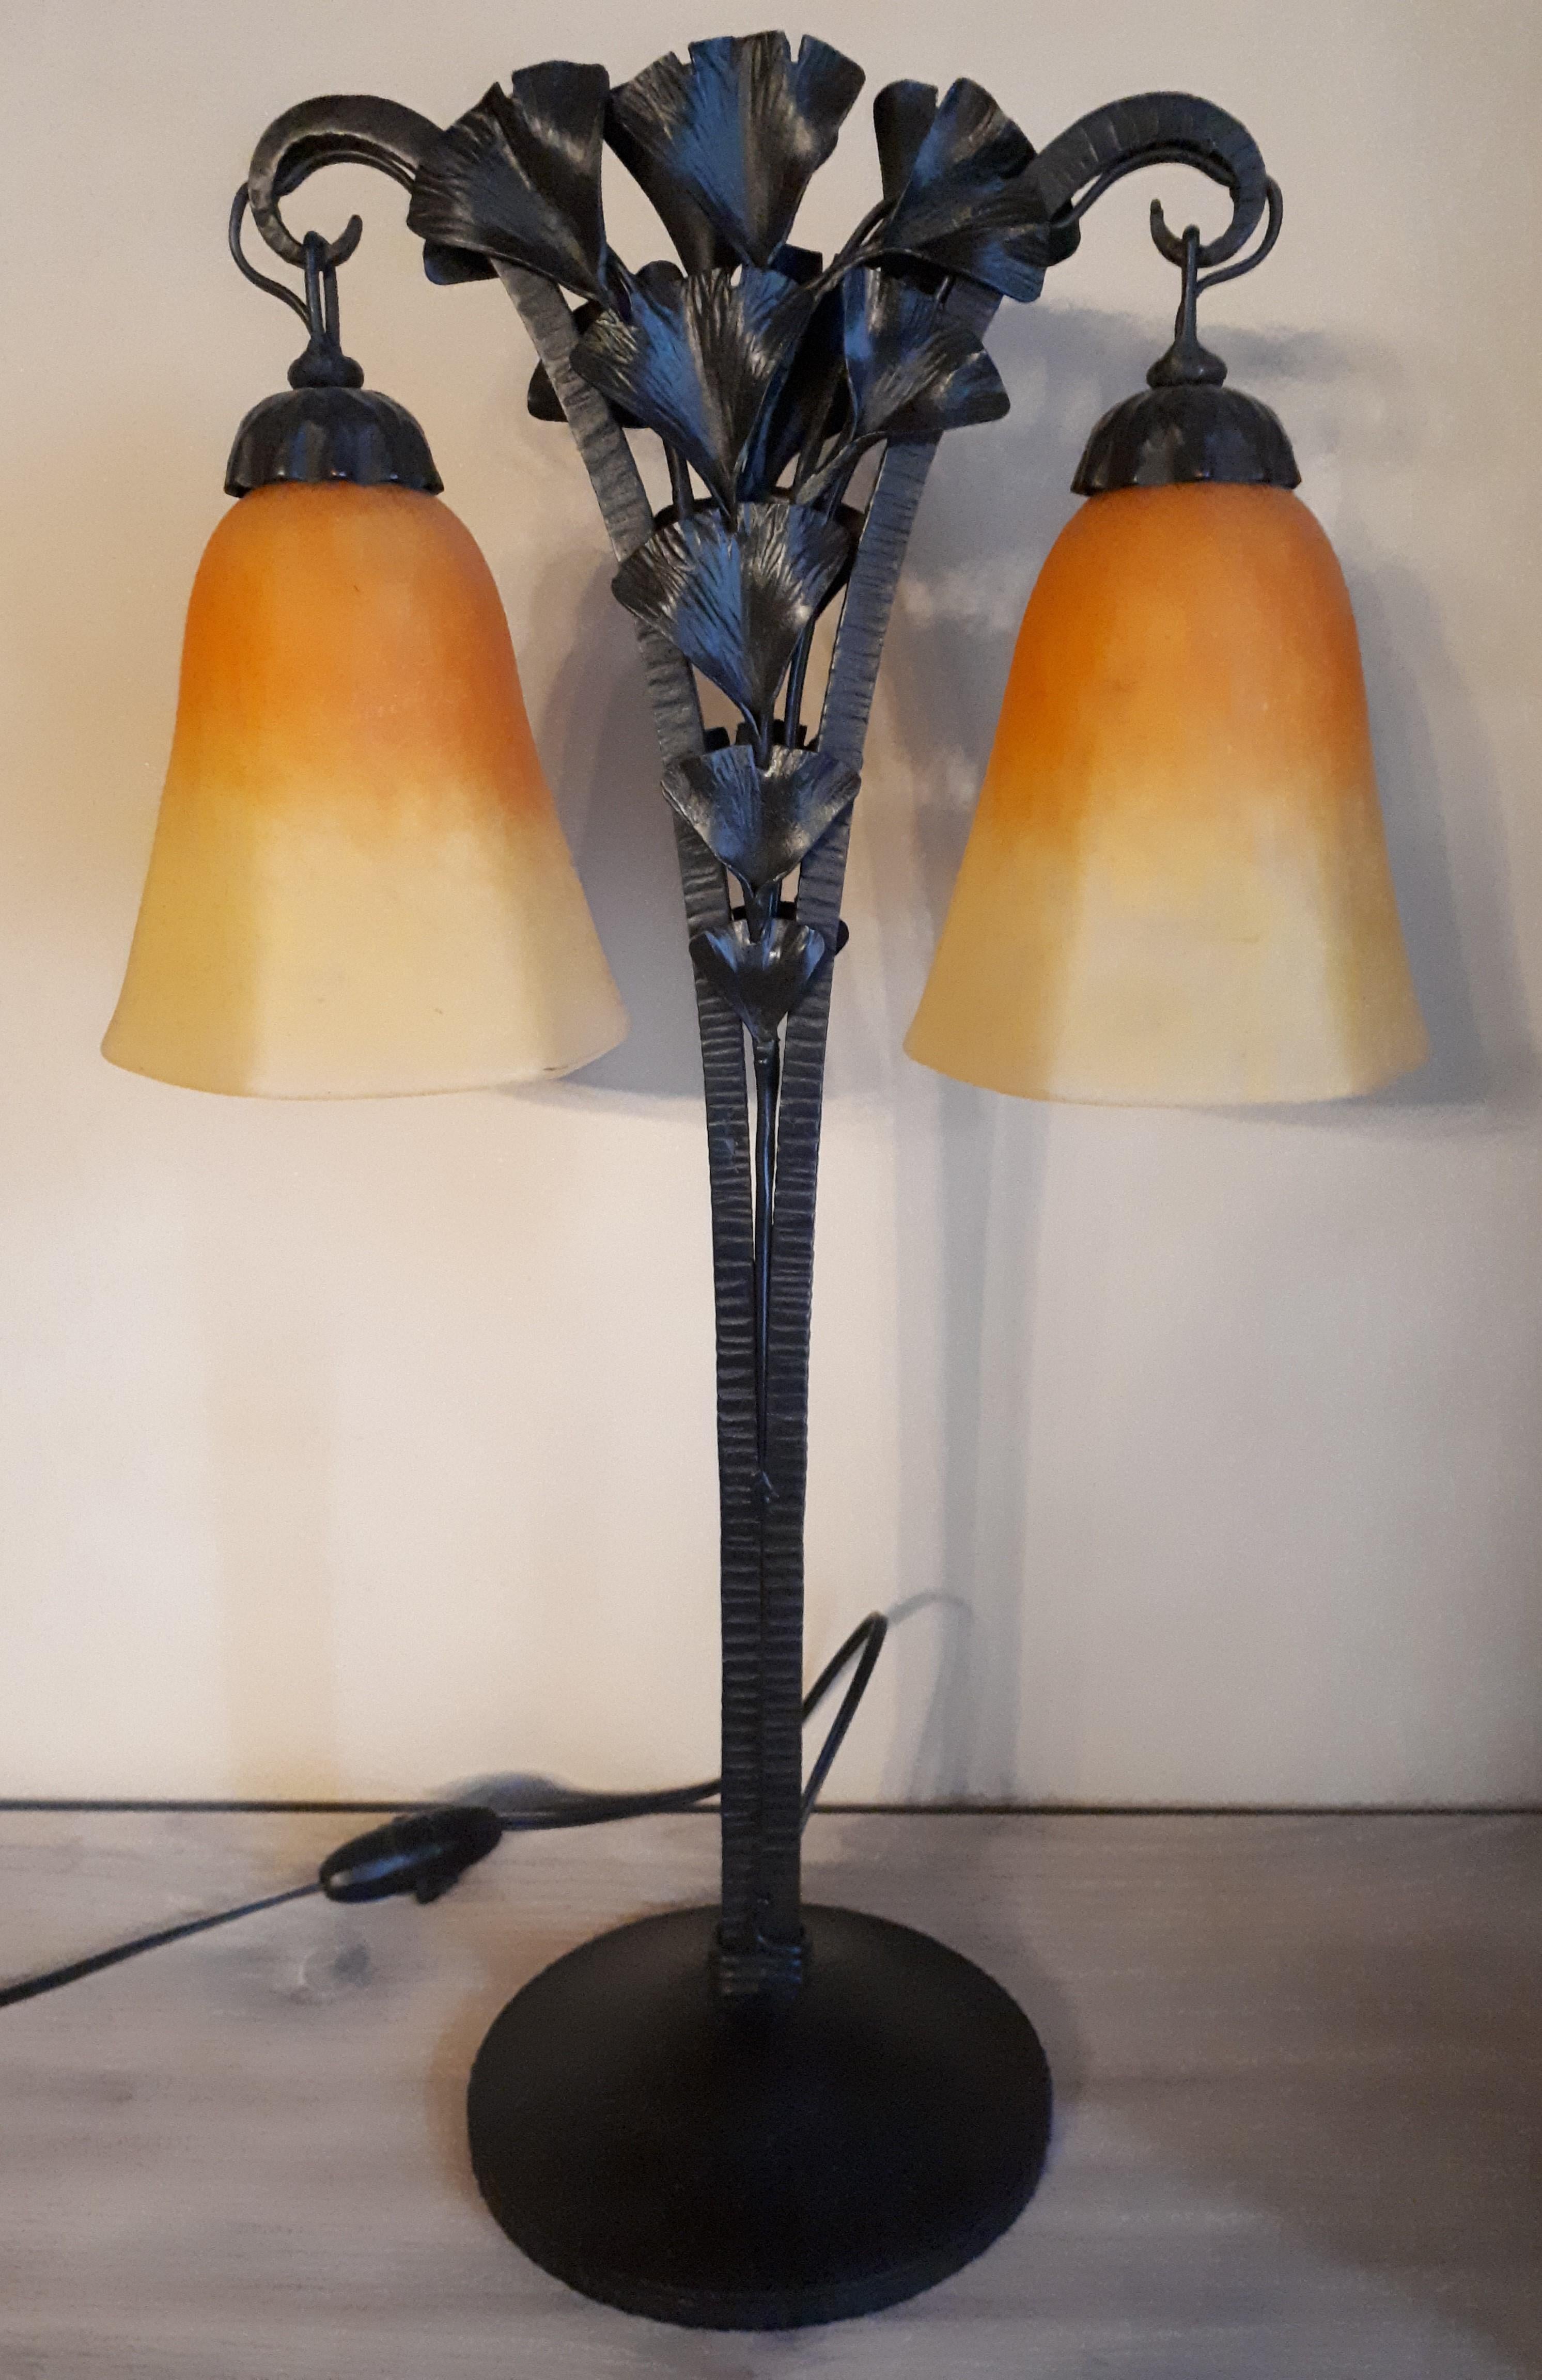 Art-Déco-Lampe aus Schmiedeeisen, verziert mit Ginkgo-Biloba-Blättern, mit zwei Lichtquellen. Die Glühbirnenabdeckungen sind von Schneider (Charles Schneider) signiert, die Passepartouts wahrscheinlich von Louis Katona, da Ginkgoblätter eines seiner